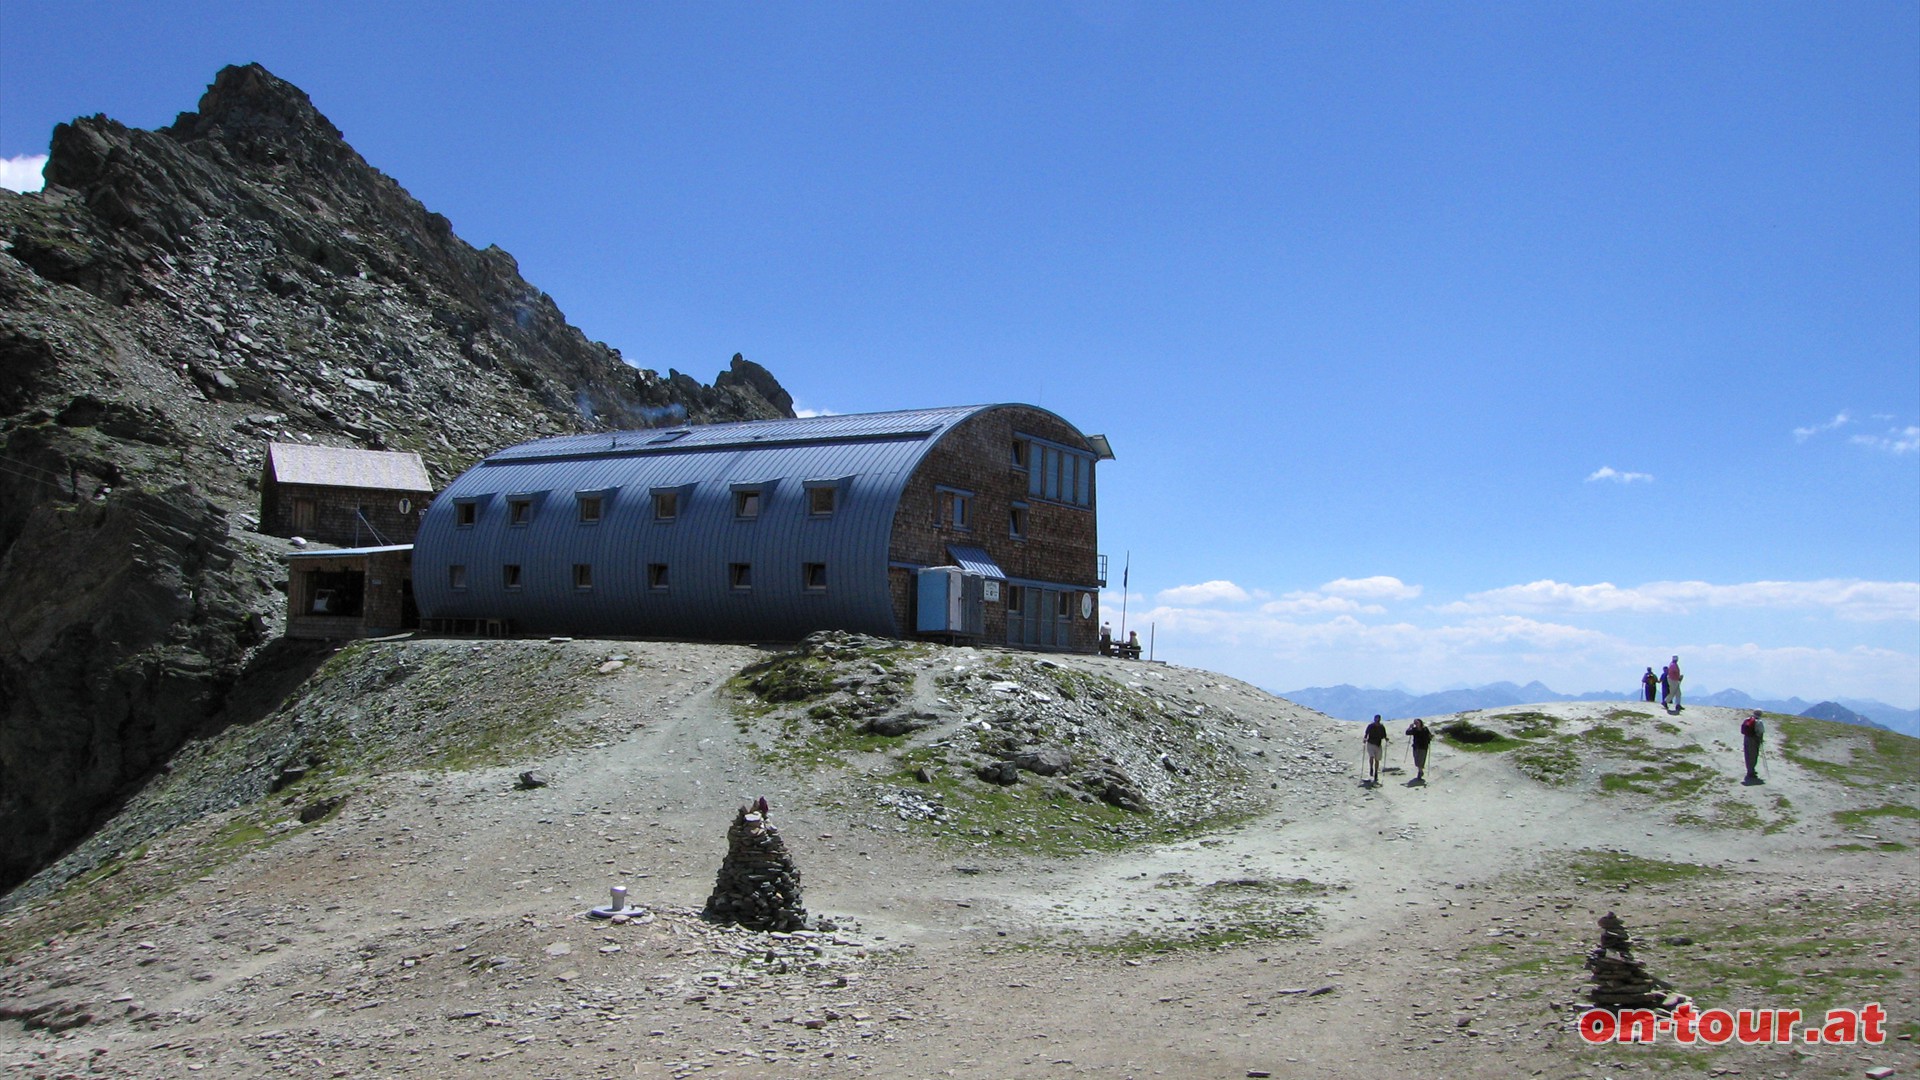 In der modernen Stüdlhütte ist für hungrige Alpinisten ausreichend Platz.